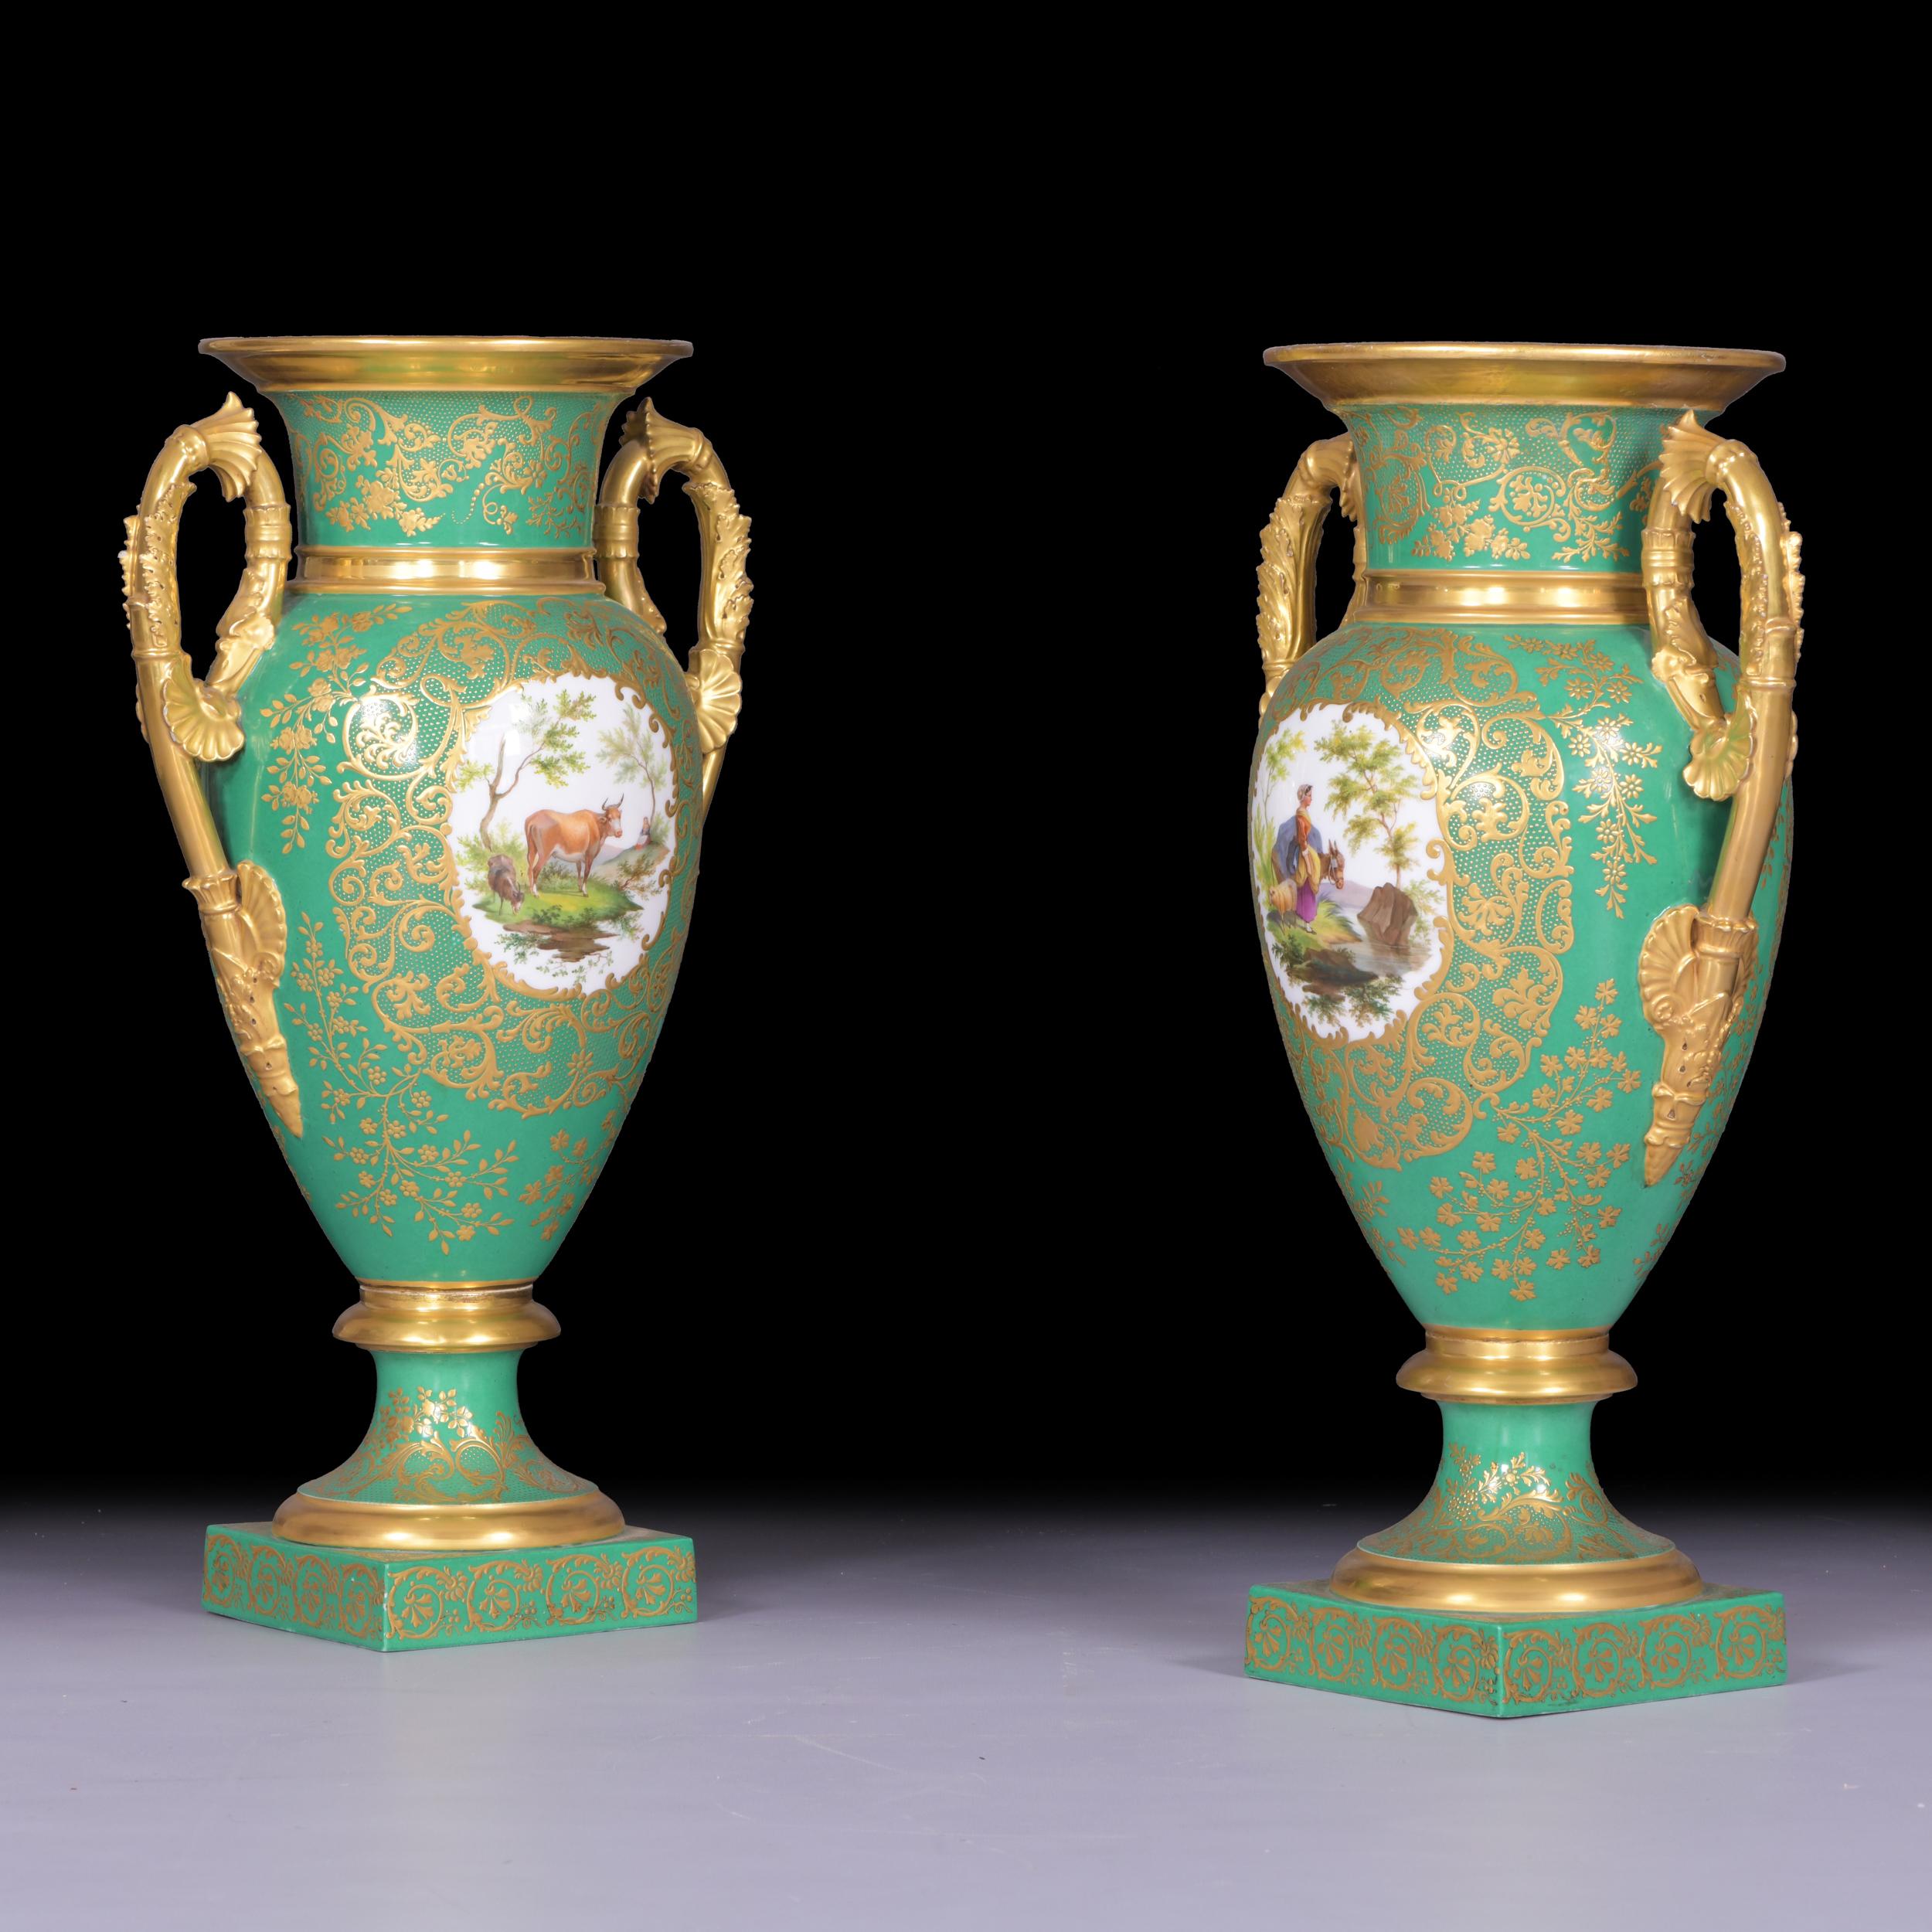 Ein feines Paar antiker Porzellanvasen aus dem frühen 19. Jahrhundert aus der Empire-Periode, die auf einem quadratischen Sockel stehen. Die Vorderseite des Vasenkörpers ist mit einer idealisierten Szene bemalt. Die idyllische Hirtenszene zeigt eine